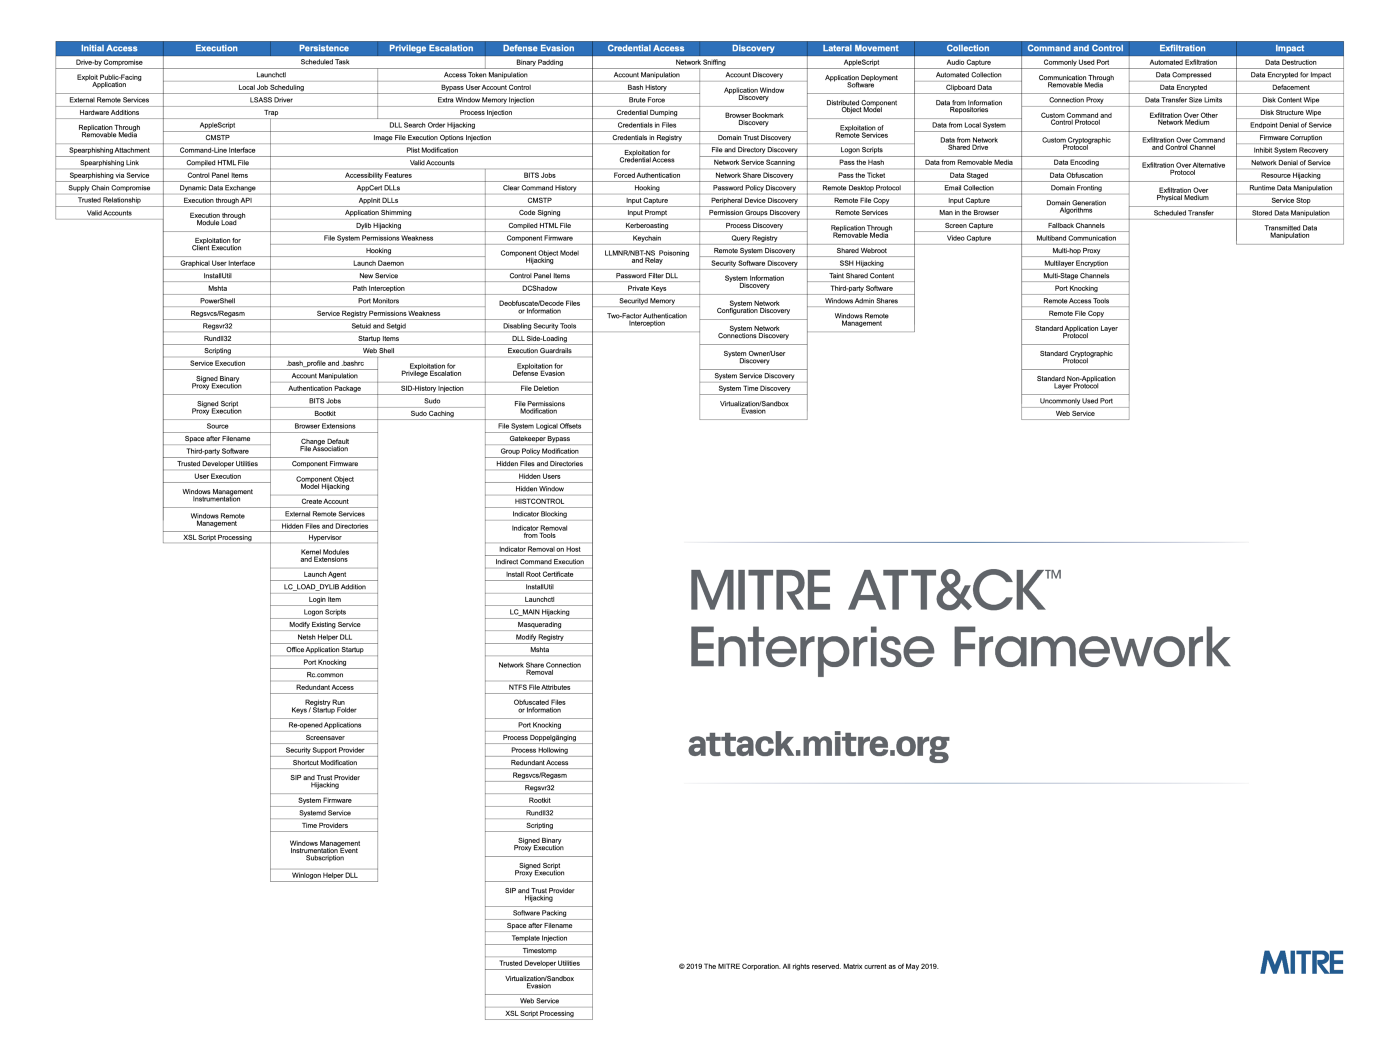 MITRE ATT&CK Enterprise Framework 2019, CyCraft